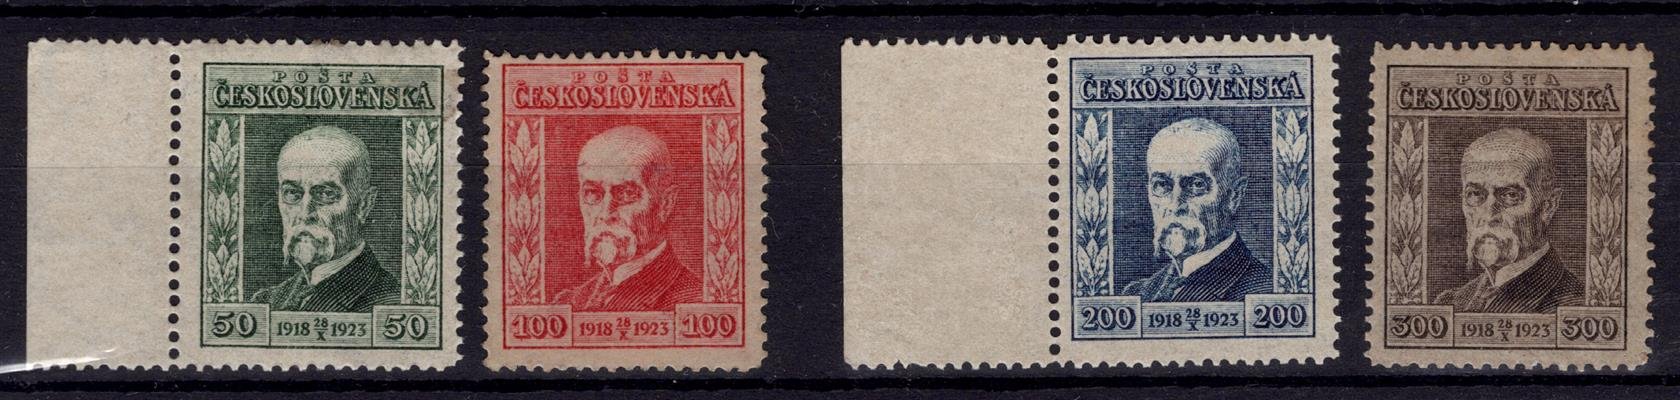 176 -179, jubilejní sestava, 2 x krajový kus 